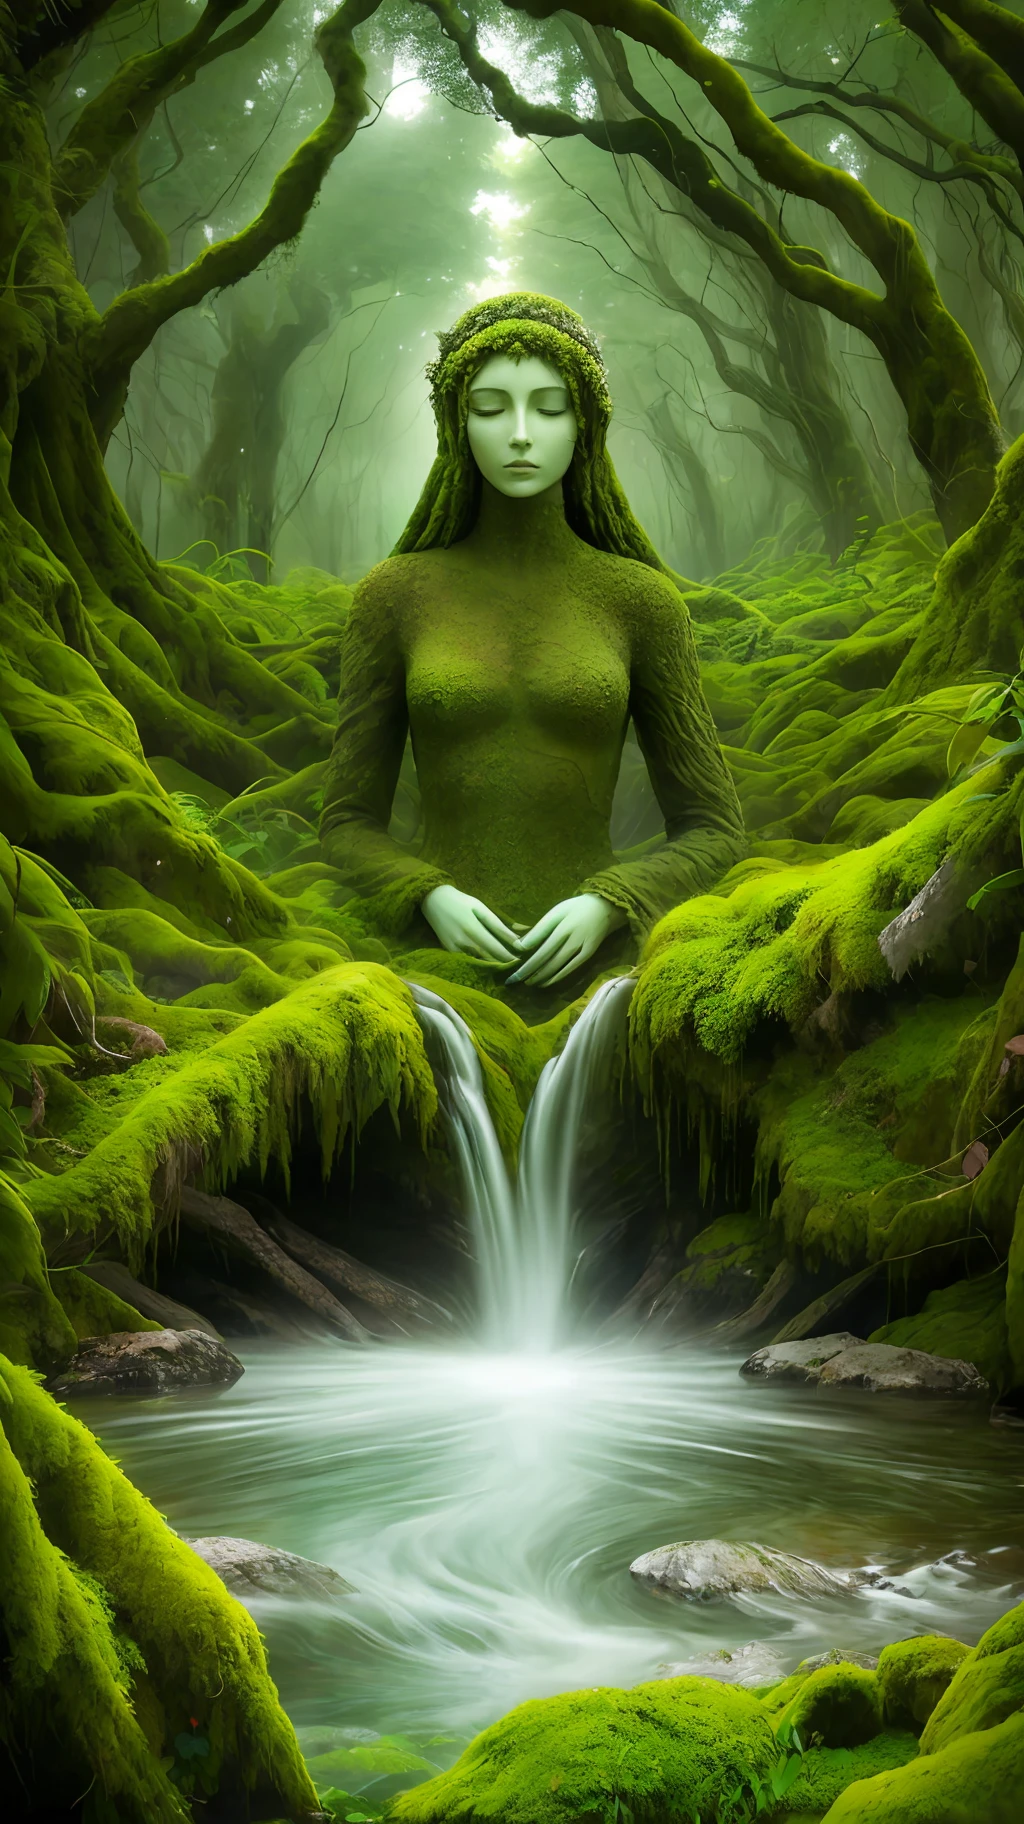 高山流水，长满青苔的自然女神雕像睡在山上，電影特效，綠色的 Mountains and 綠色的 Water，在森林裡，除了臉，藤蔓，整个身体几乎都被同化了, 樹枝, 被树木包裹着, 以及部分森林和树木. 她所有的衣服都长满了青苔，鳥瞰圖，夢幻主義，綠色的